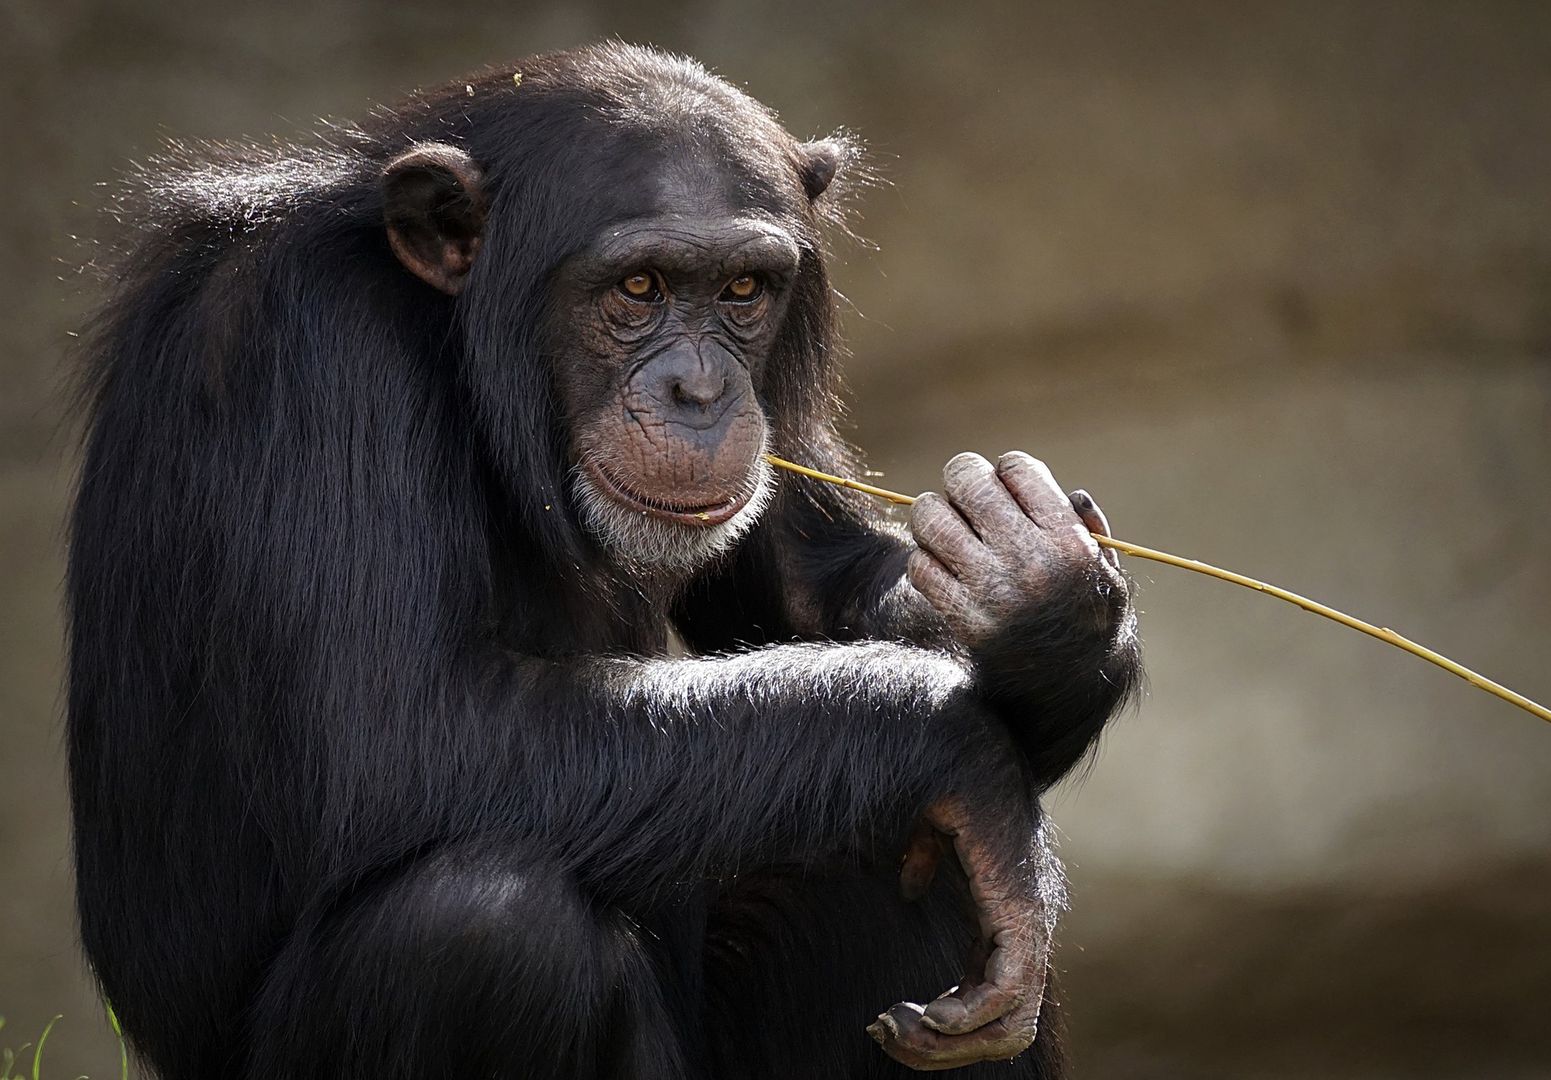 Belgijka miała "romans" z szympansem. Kobieta dostała zakaz wizyt w zoo